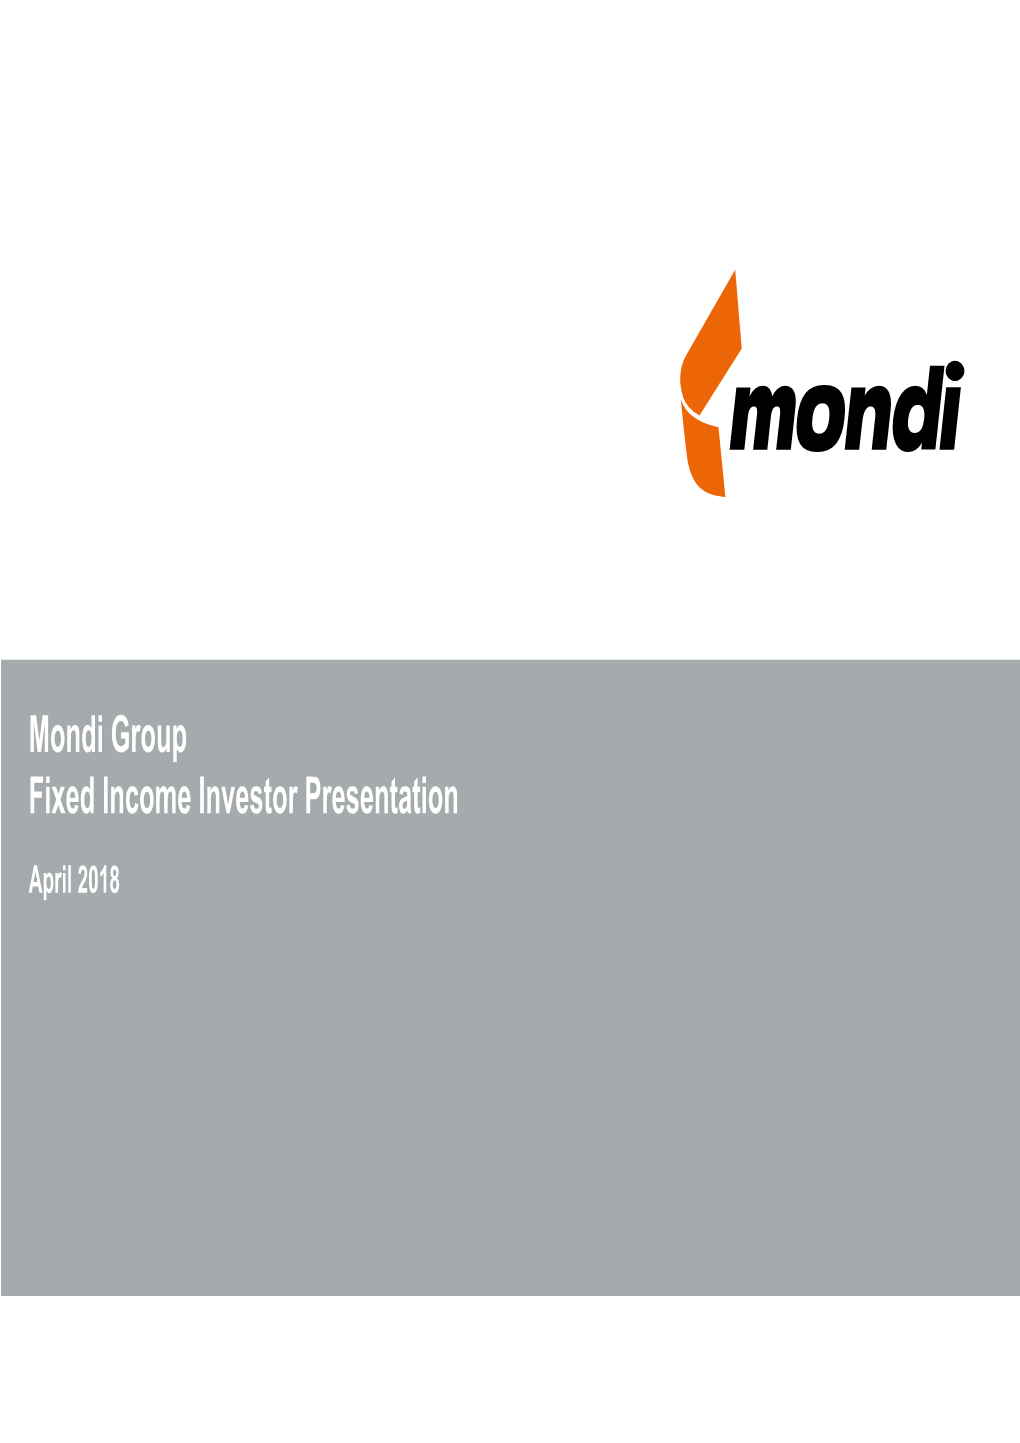 Mondi Group Fixed Income Investor Presentation